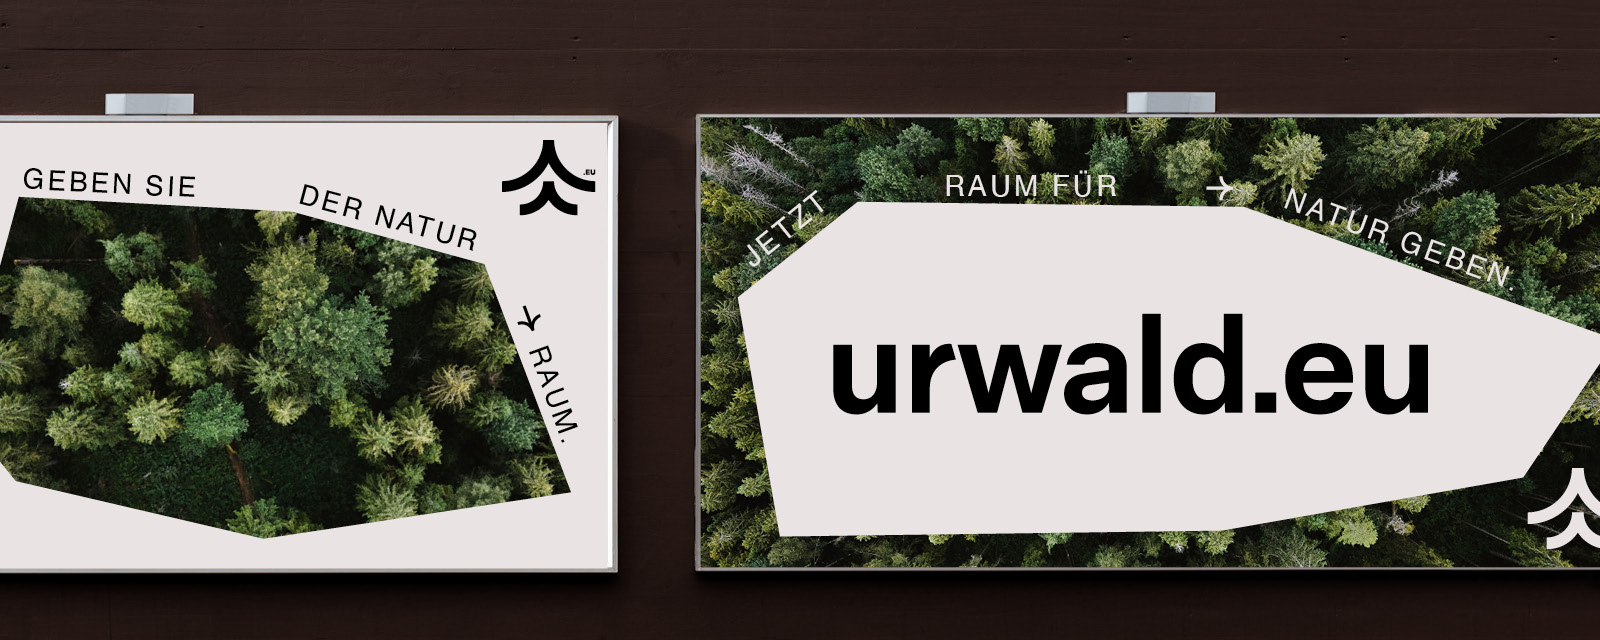 Zwei Plakate mit dem Wort urwald.eu darauf.